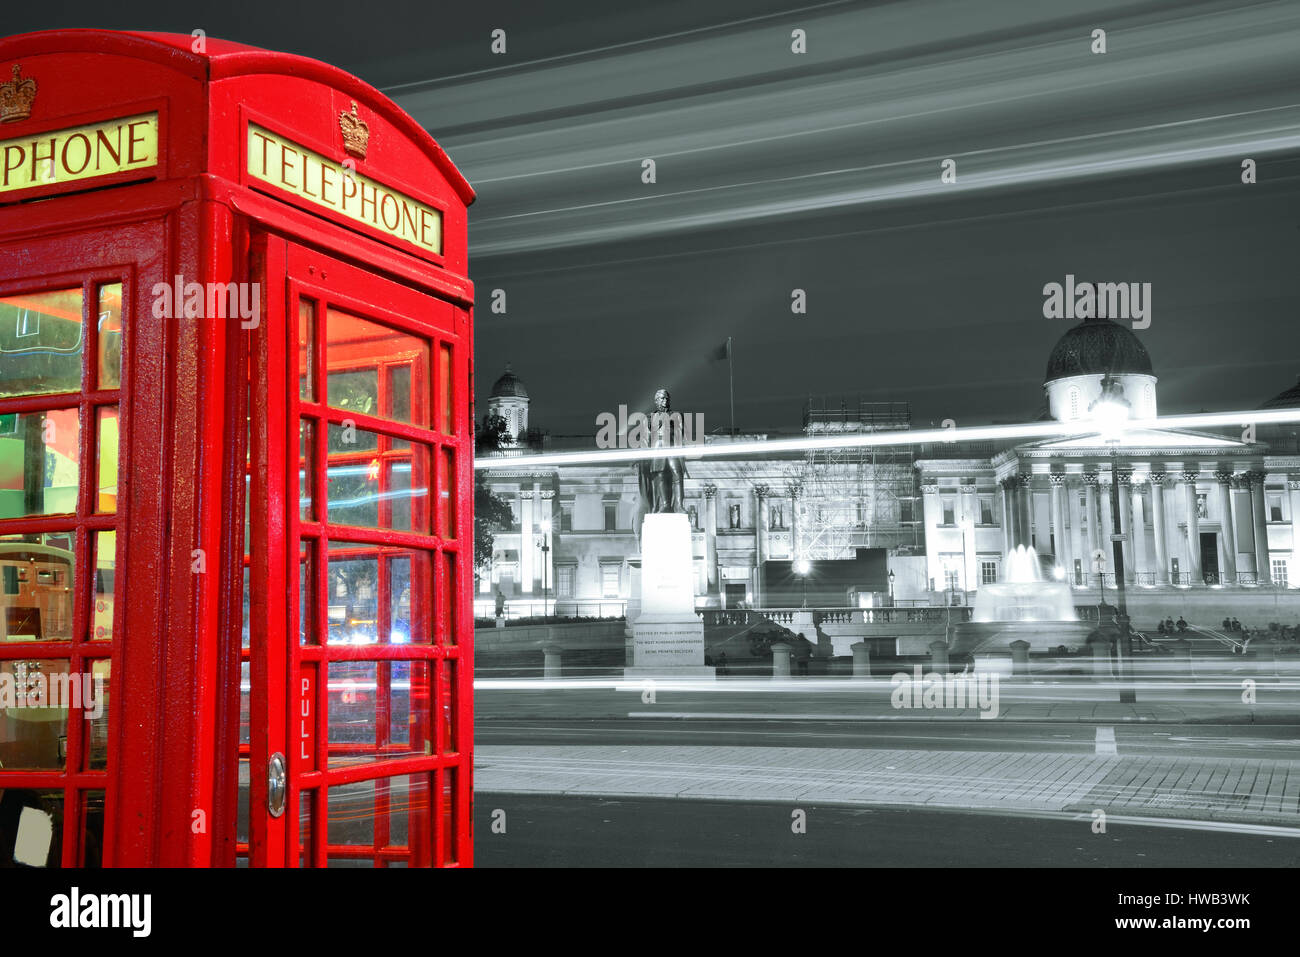 LONDON, UK - 27. September: London Street View mit ikonischen Telefonzelle am 27. September 2013 in London, Vereinigtes Königreich. London ist die meistbesuchte Stadt der Welt und die Stockfoto